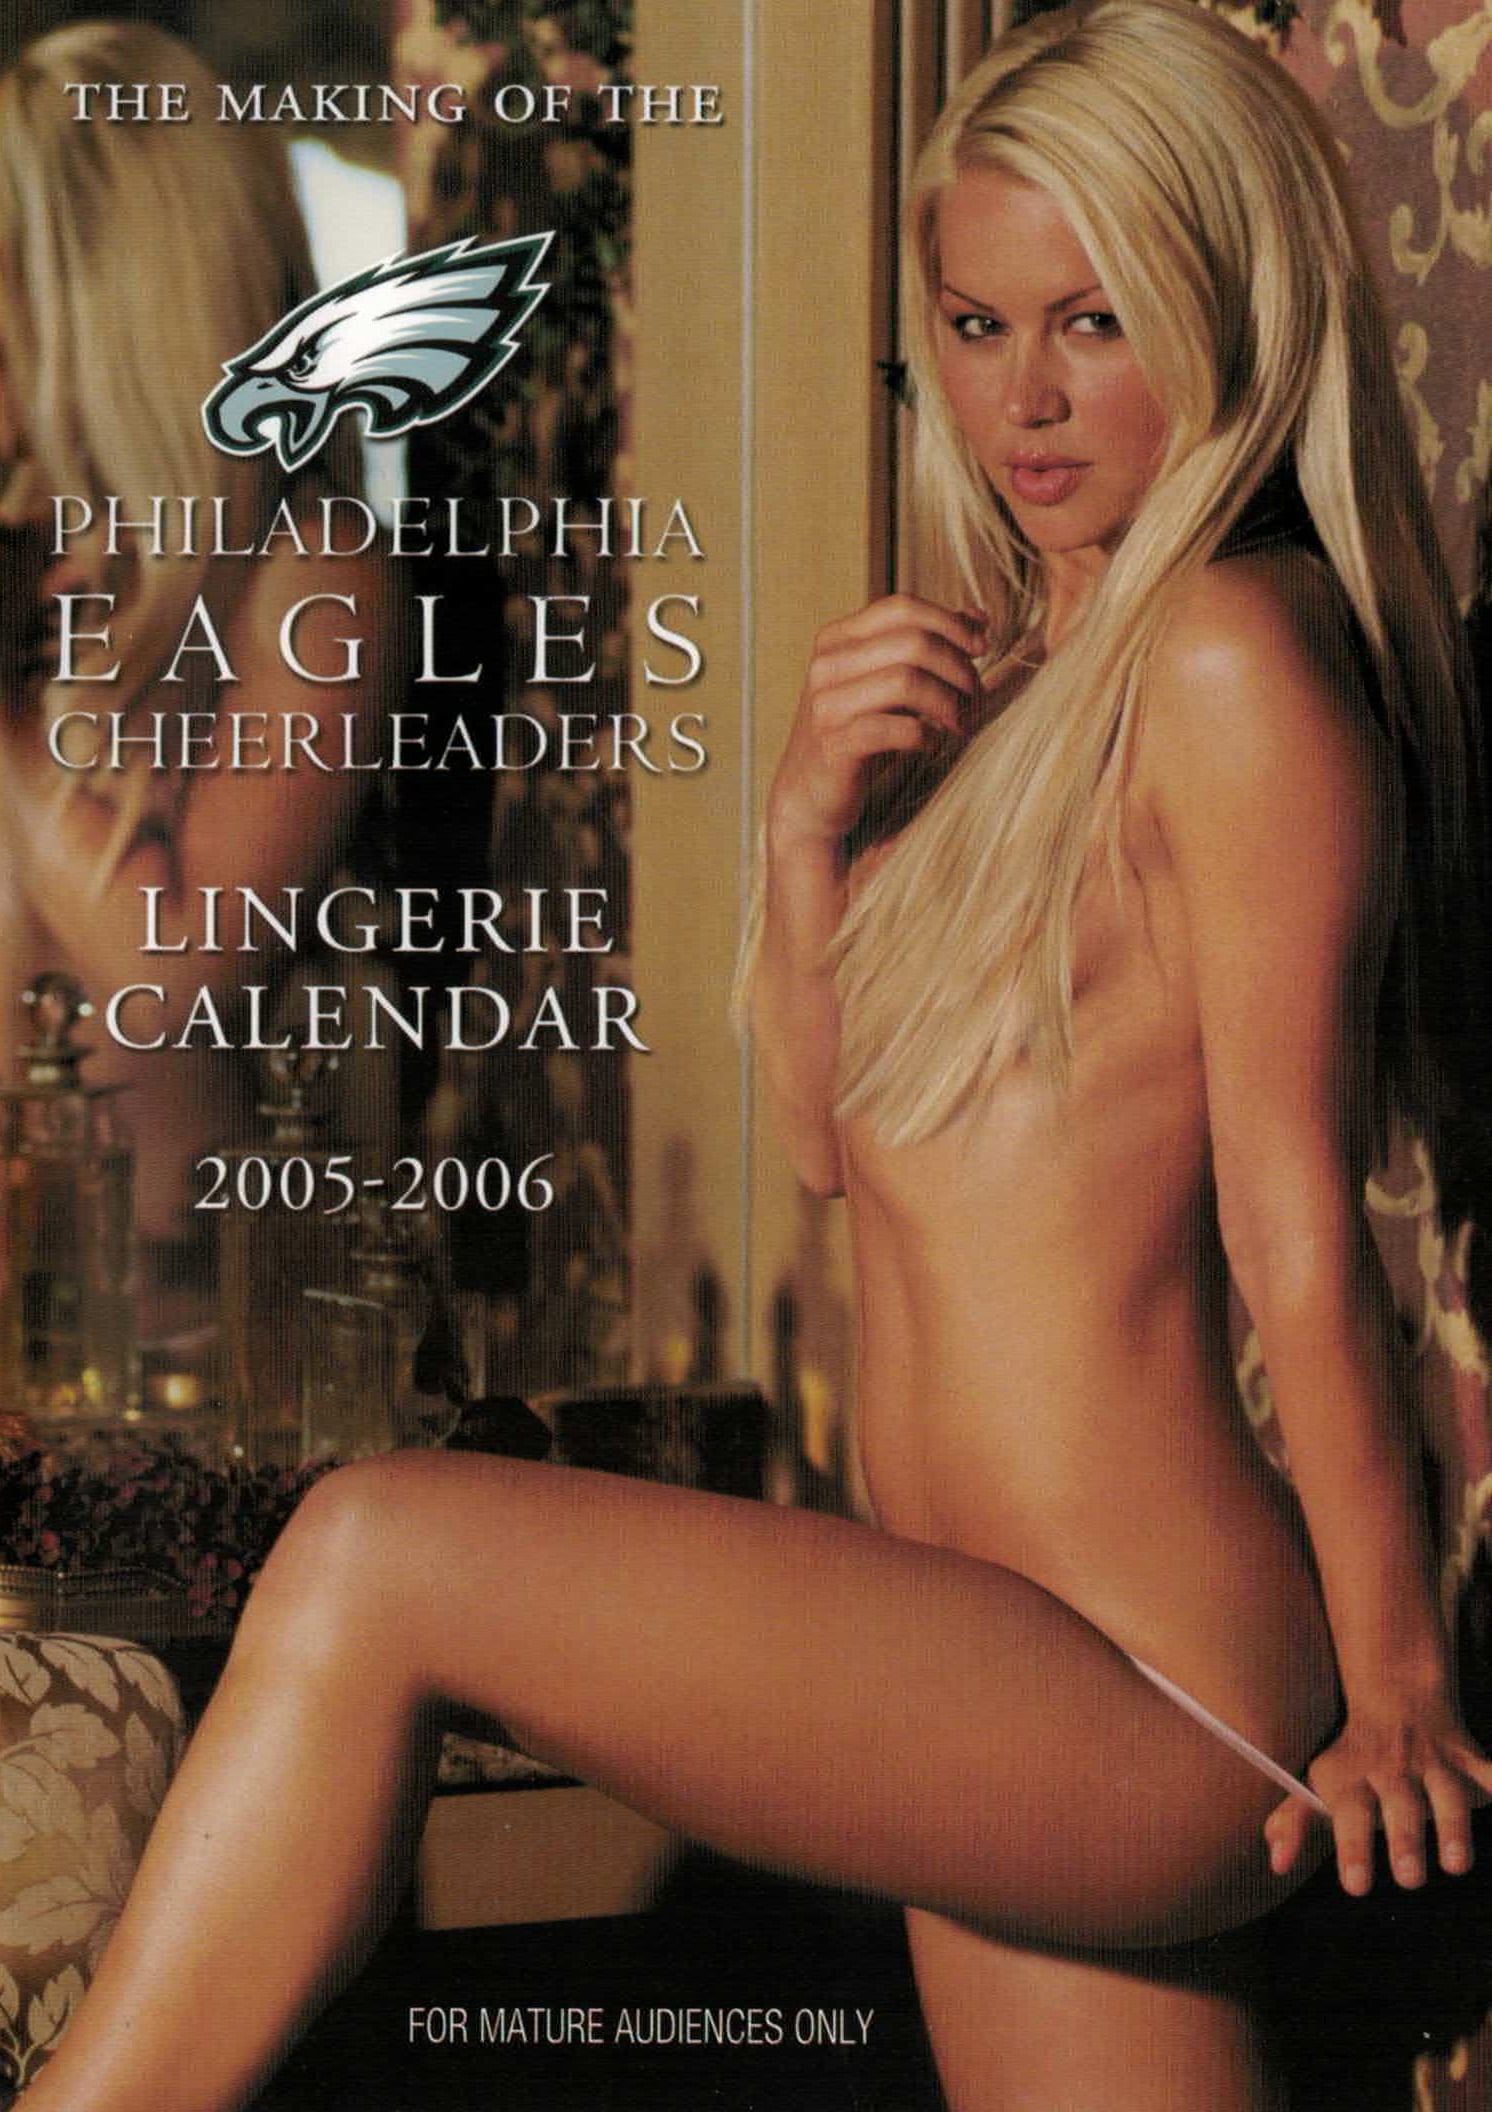 The Making of the Philadelphia Eagles Cheerleaders Lingerie Calendar 2005-2006